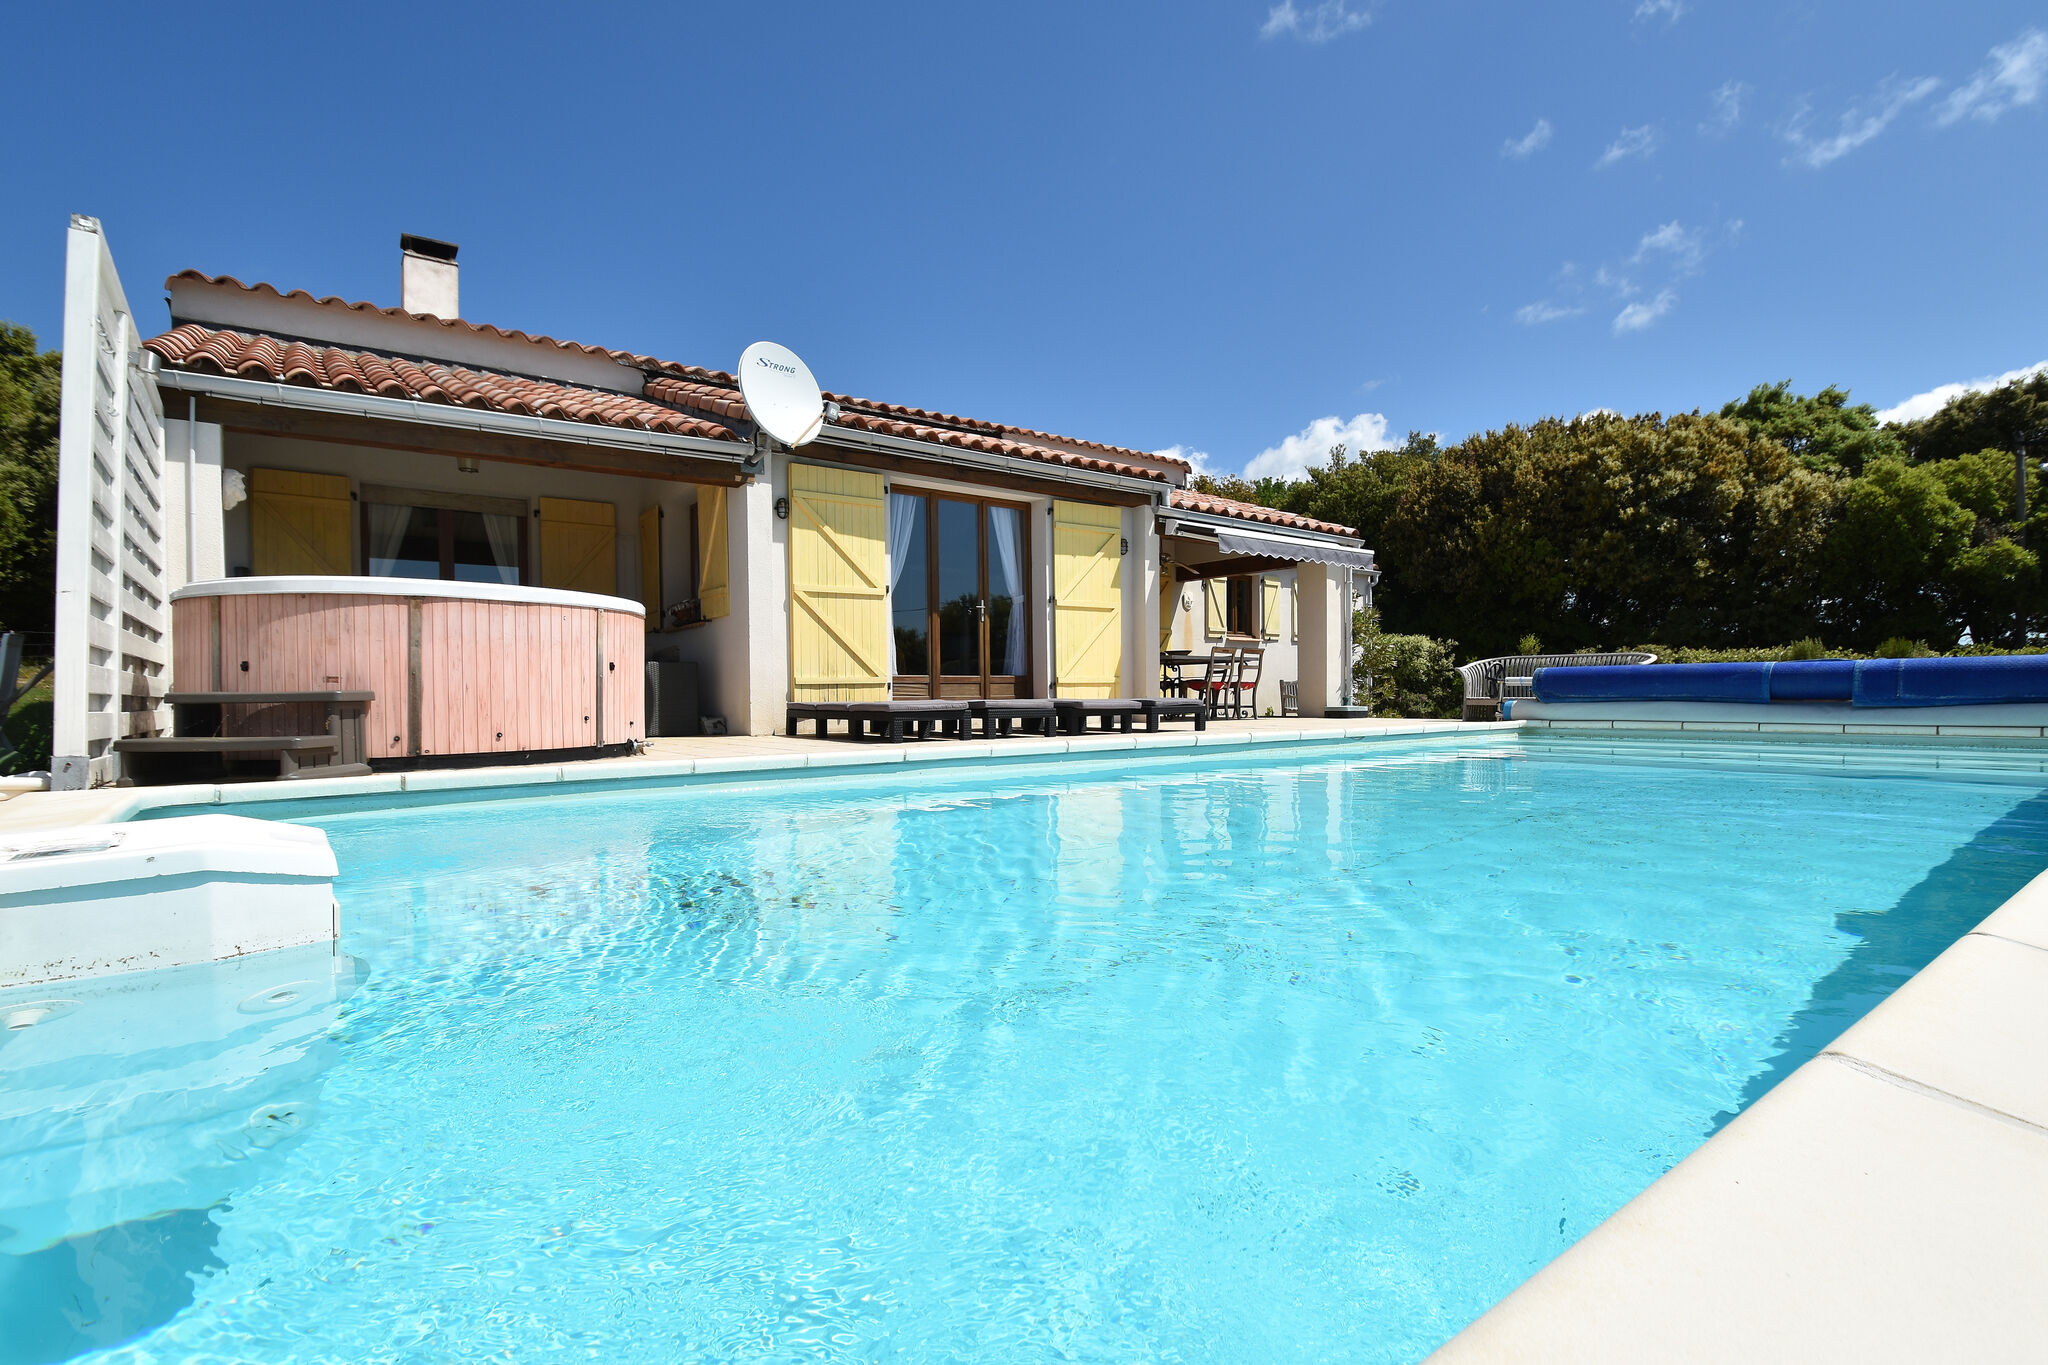 Villa avec piscine chauffée, jacuzzi et vue imprenable